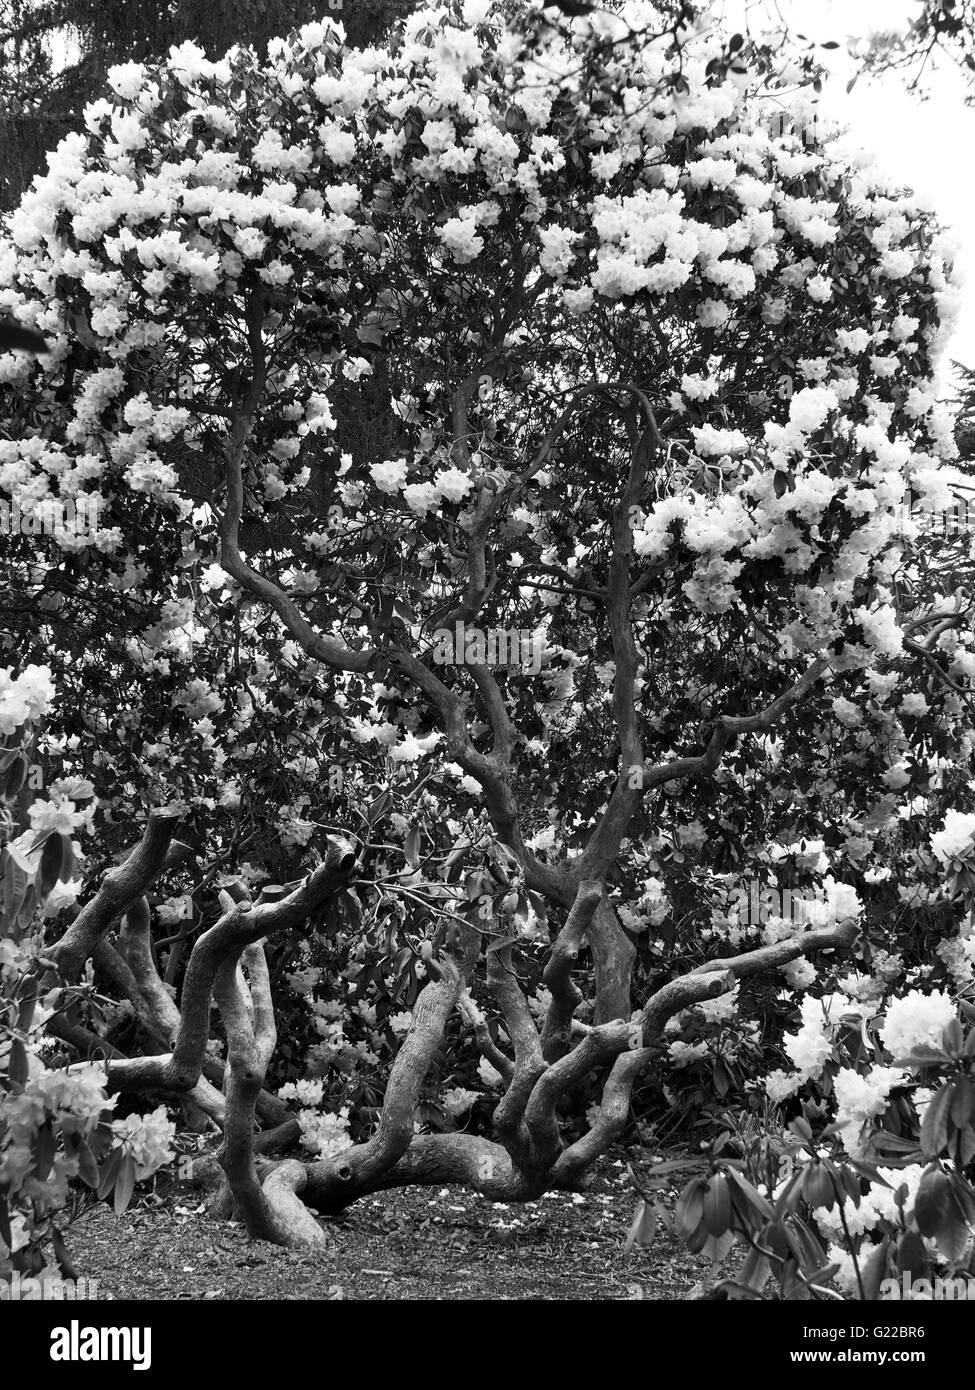 Rhododendron torsadée arbre avec des fleurs blanches à Langley Park Banque D'Images